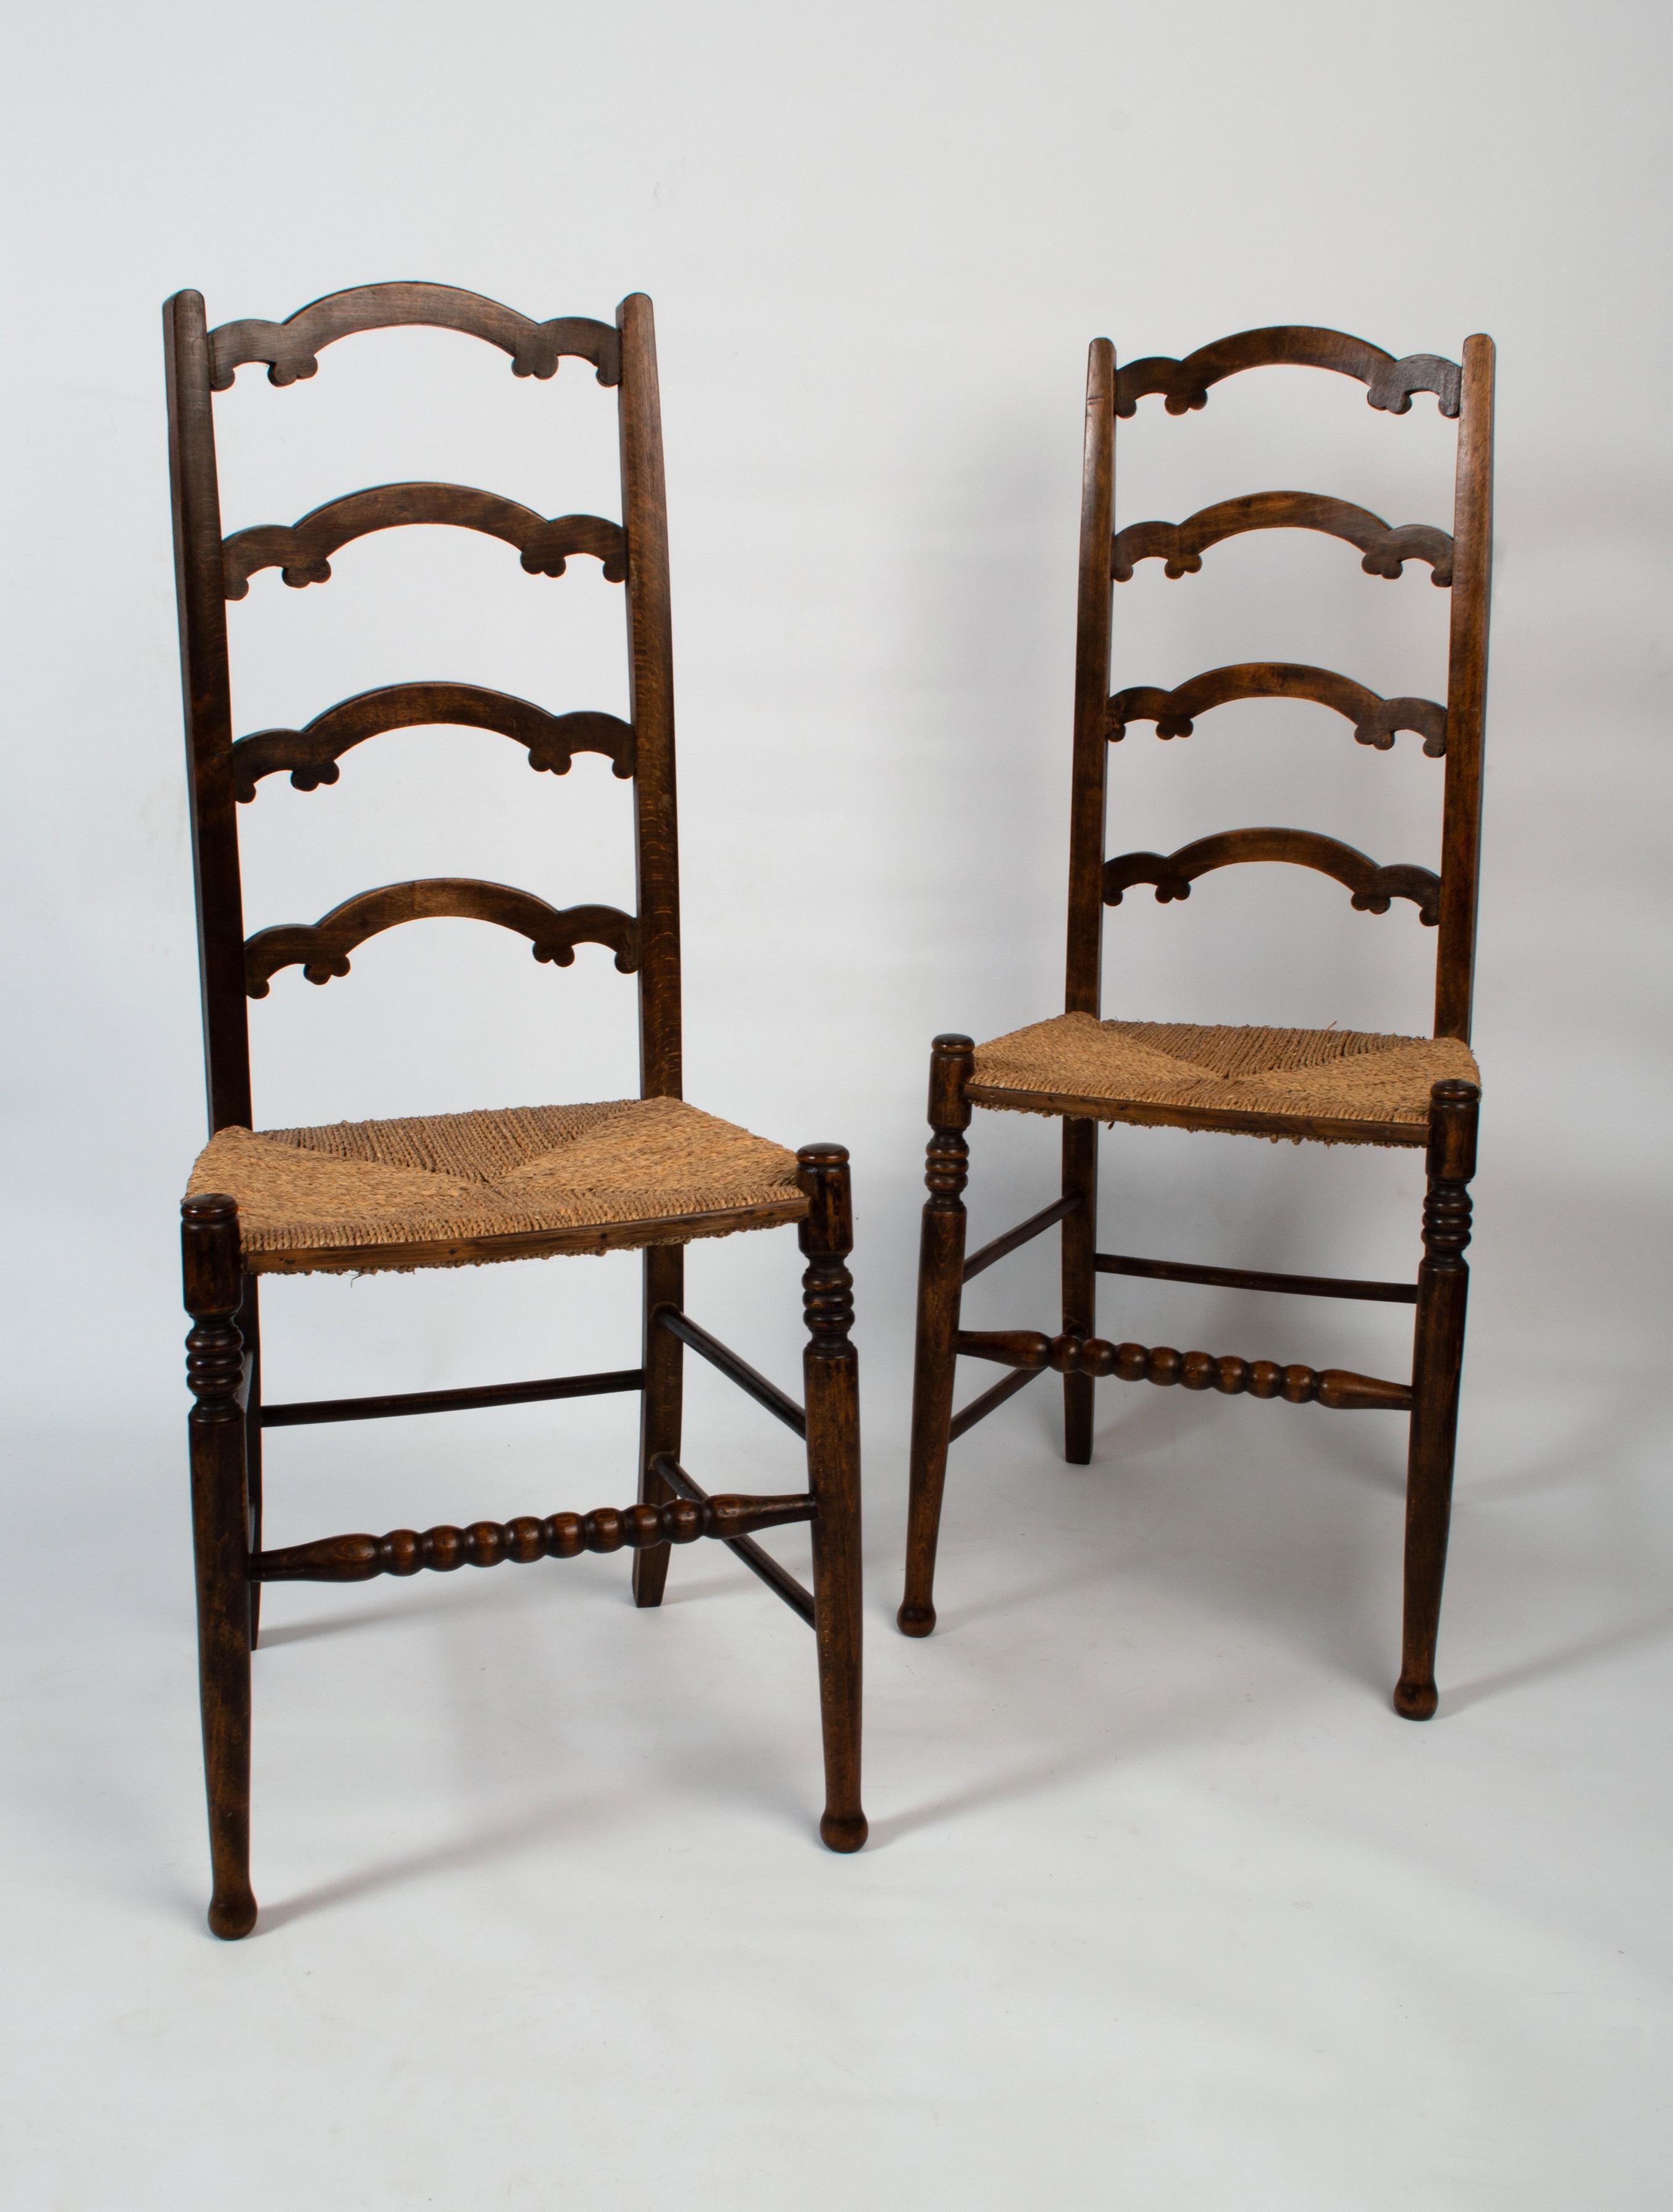 Paar antike englische Kunsthandwerker Liberty & Co. Rush Chairs, die William Birch zugeschrieben werden.
C.1890
Sehr guter, dem Alter entsprechender Zustand. Gute solide Konstruktion.